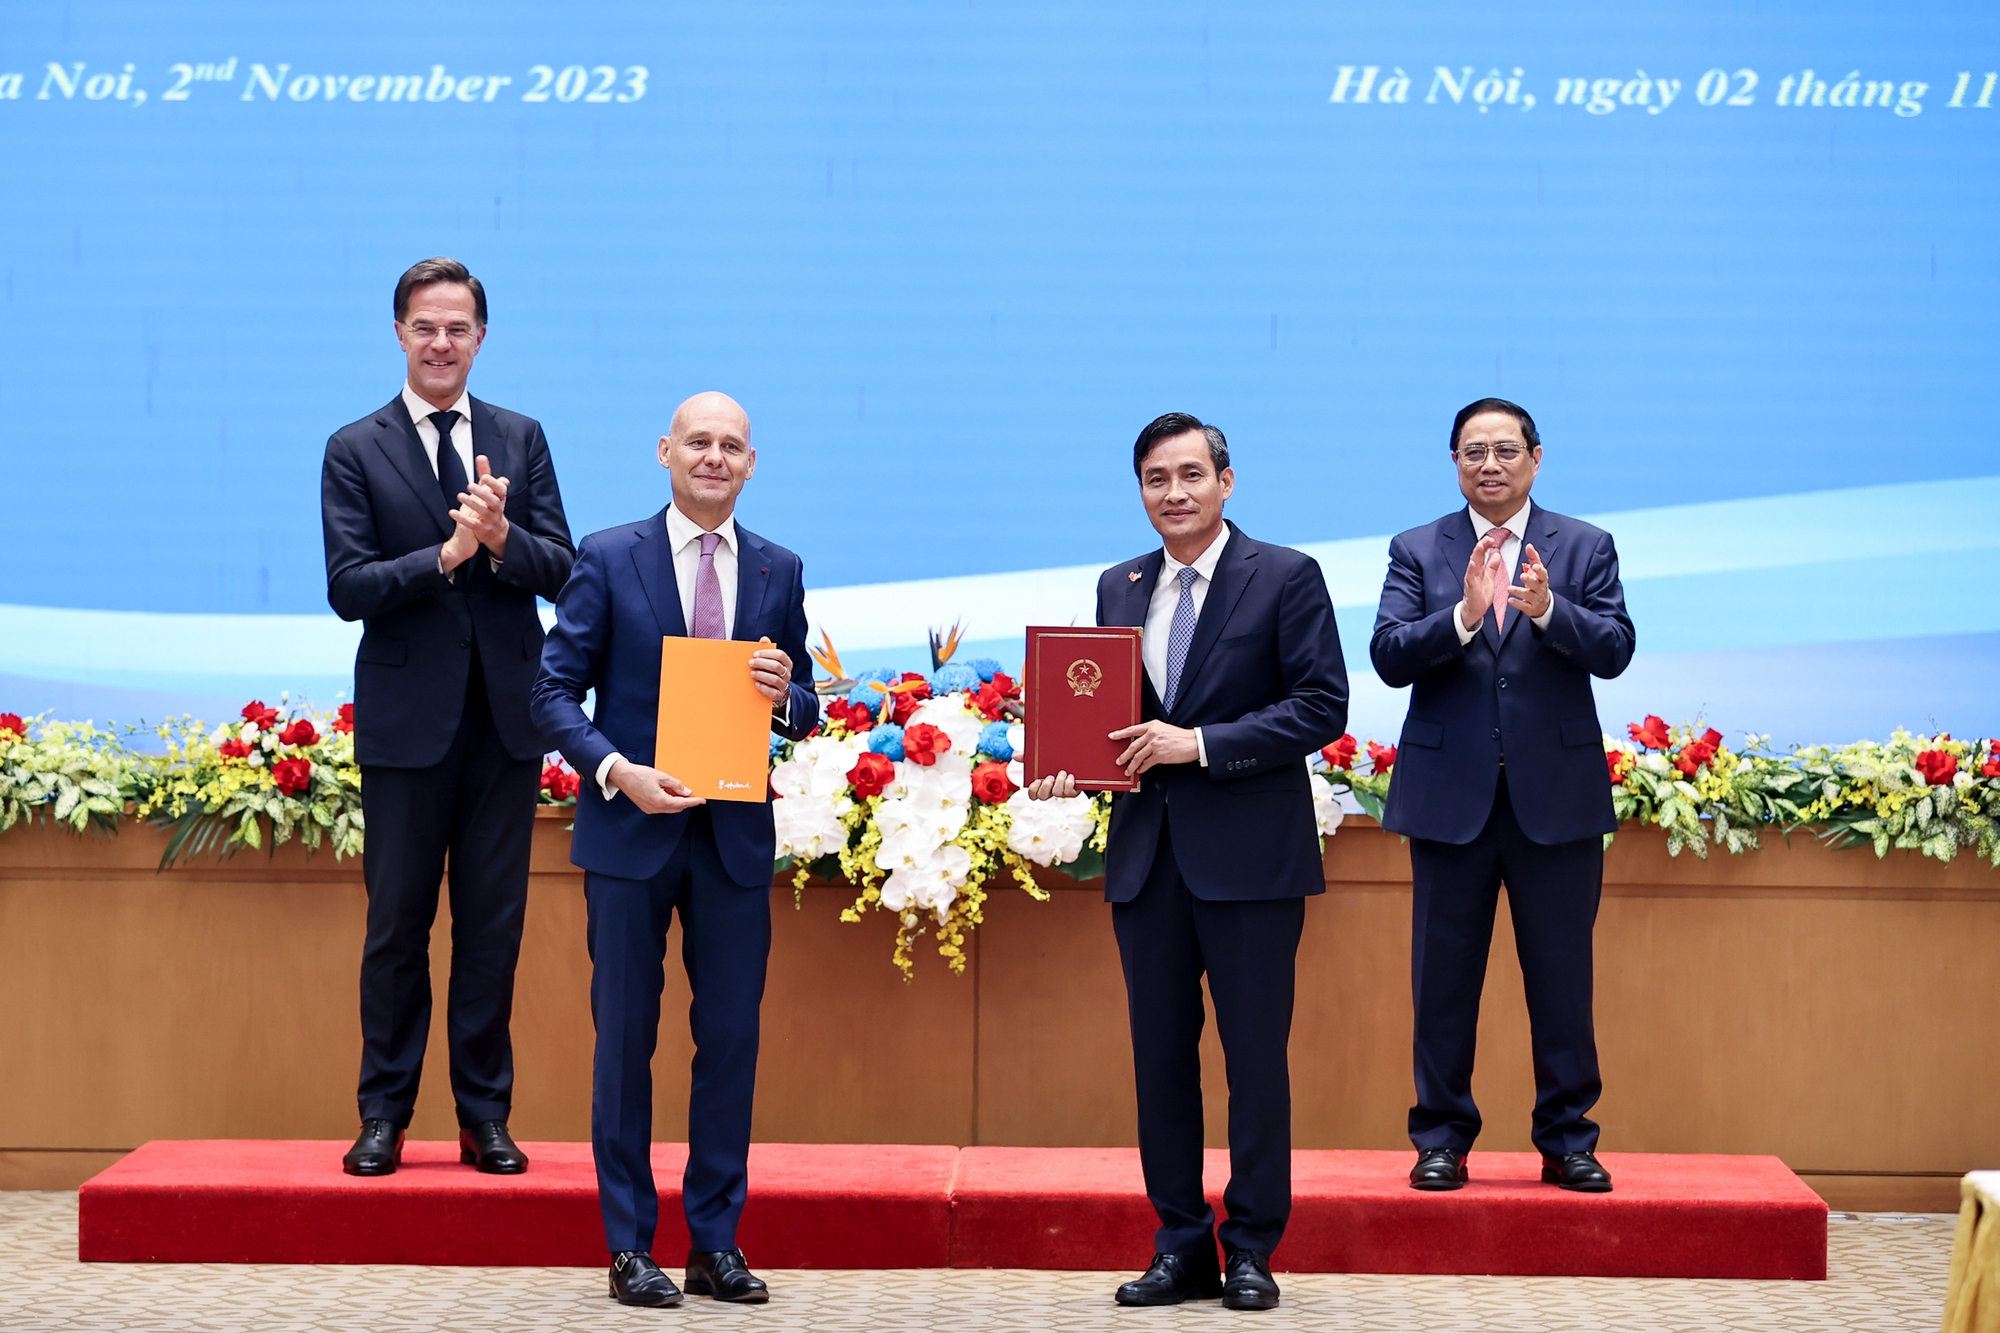 Thứ trưởng Bộ Tài nguyên và Môi trường Trần Quý Kiên và Đại sứ Hà Lan tại Việt Nam Kees van Baar trao Ý định thư về hợp tác thăm dò và khai thác bền vững các khoáng sản quan trọng - Ảnh: VGP/Nhật Bắc